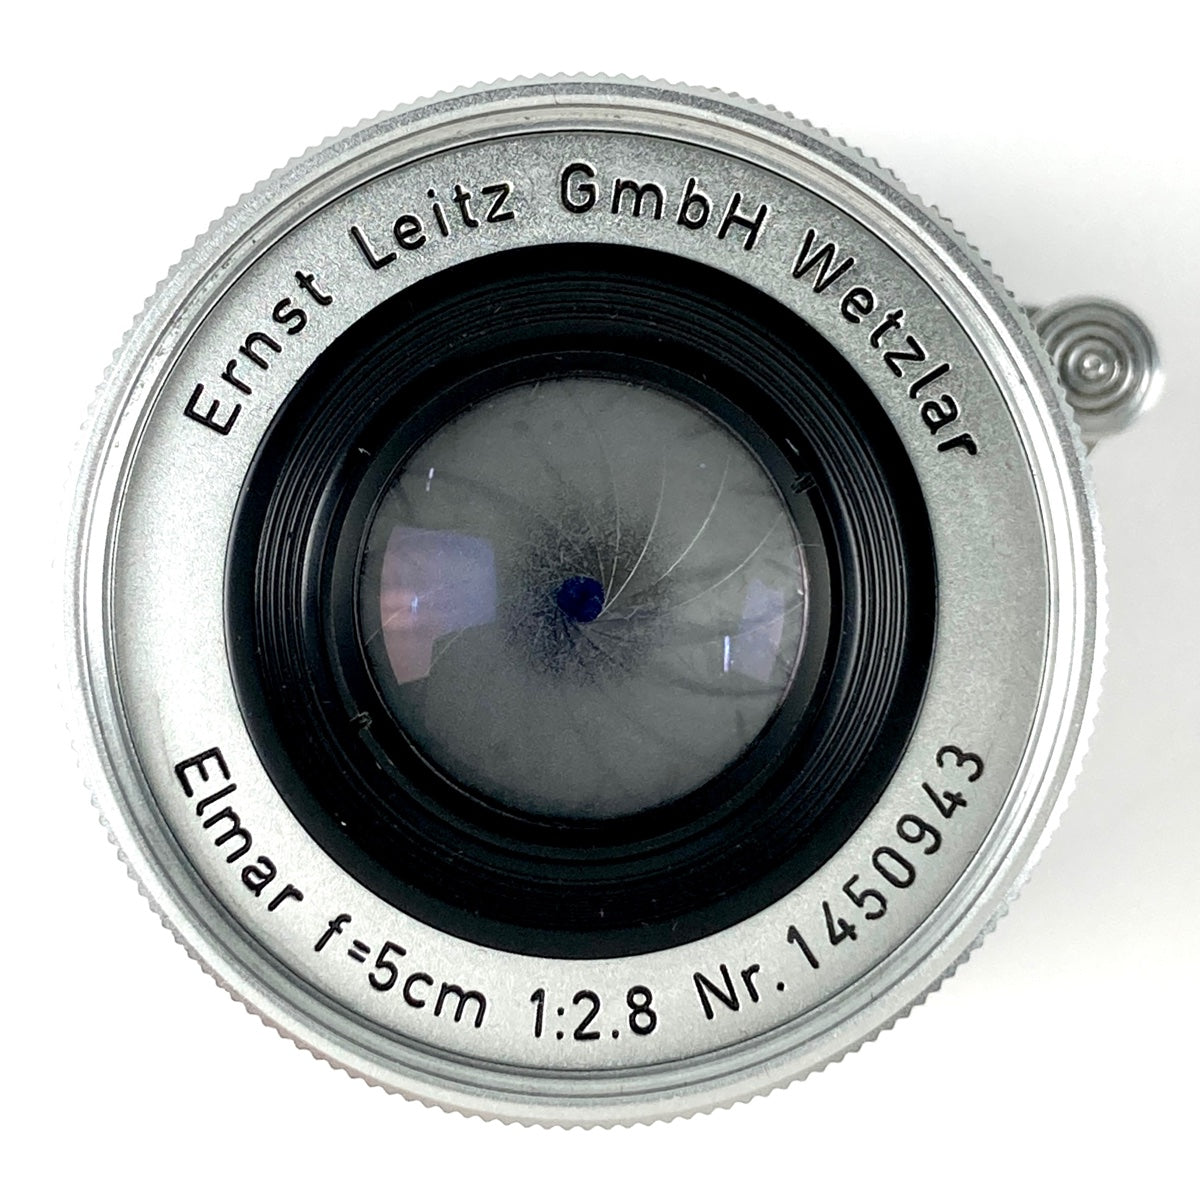 ライカ LEICA Elmar 50mm F2.8 エルマー 5cm Lマウント L39 レンジファインダーカメラ用レンズ 【中古】